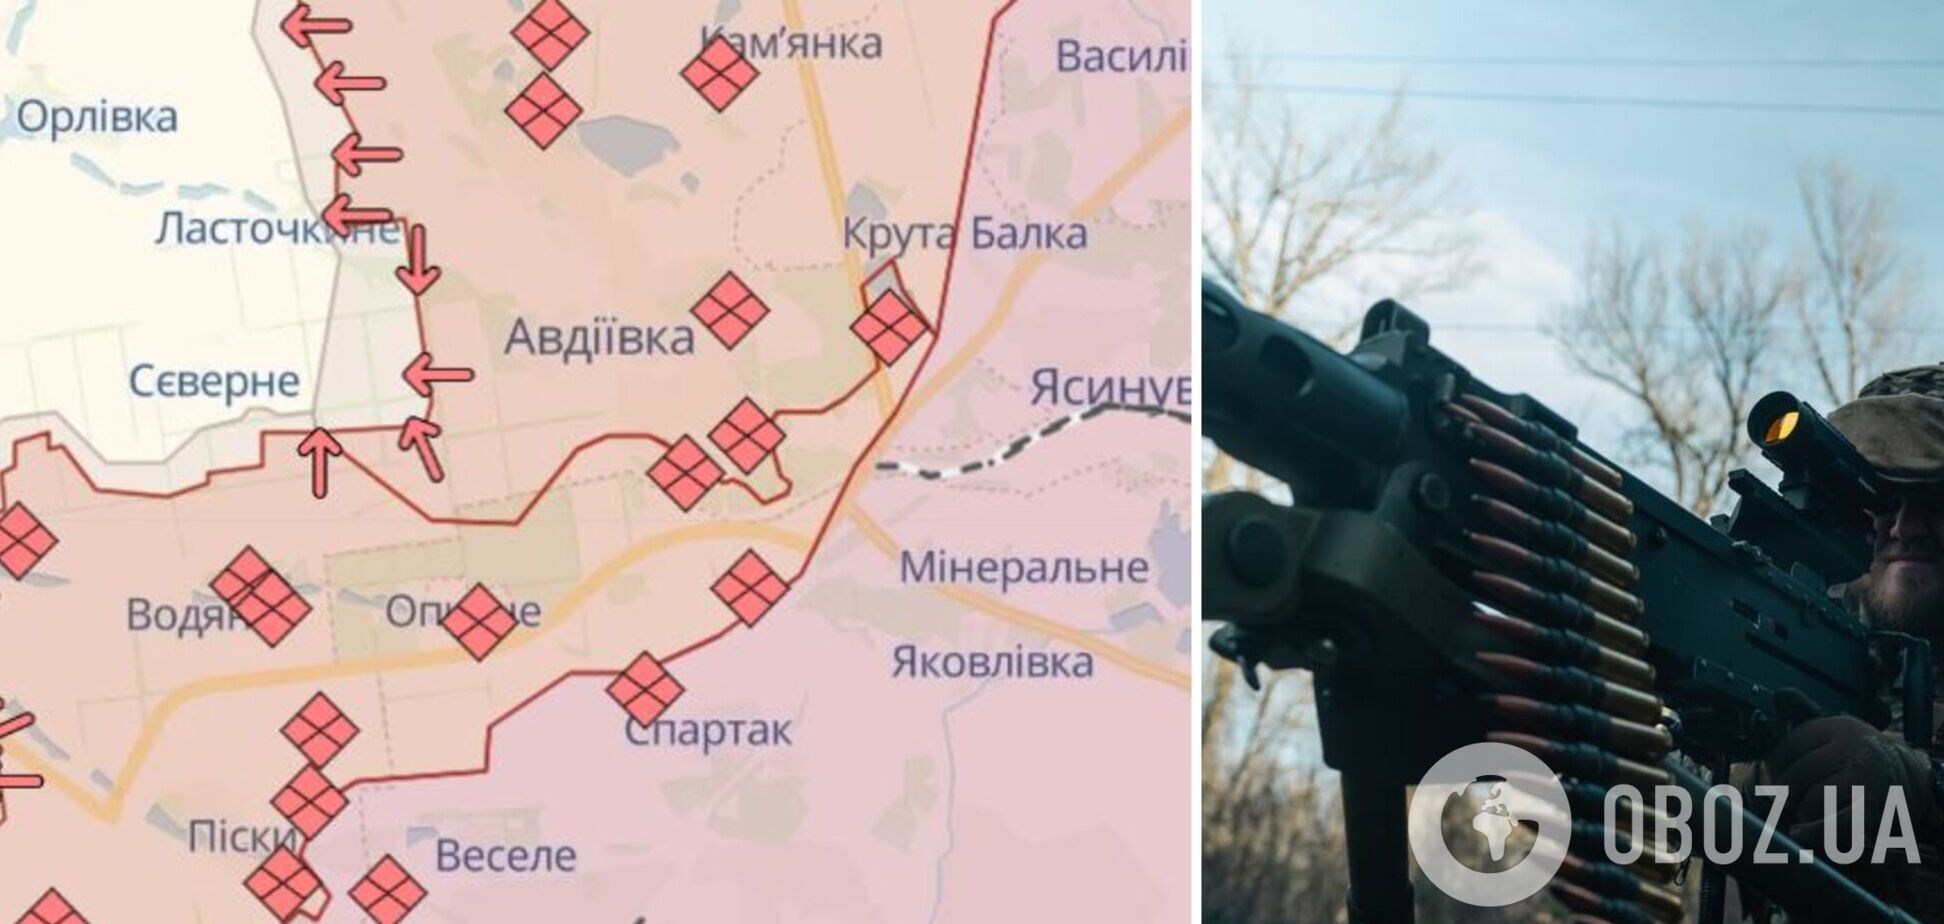 ВСУ: вывод украинских войск из Авдеевки завершен, воздержитесь от спекуляций в отношении пленных